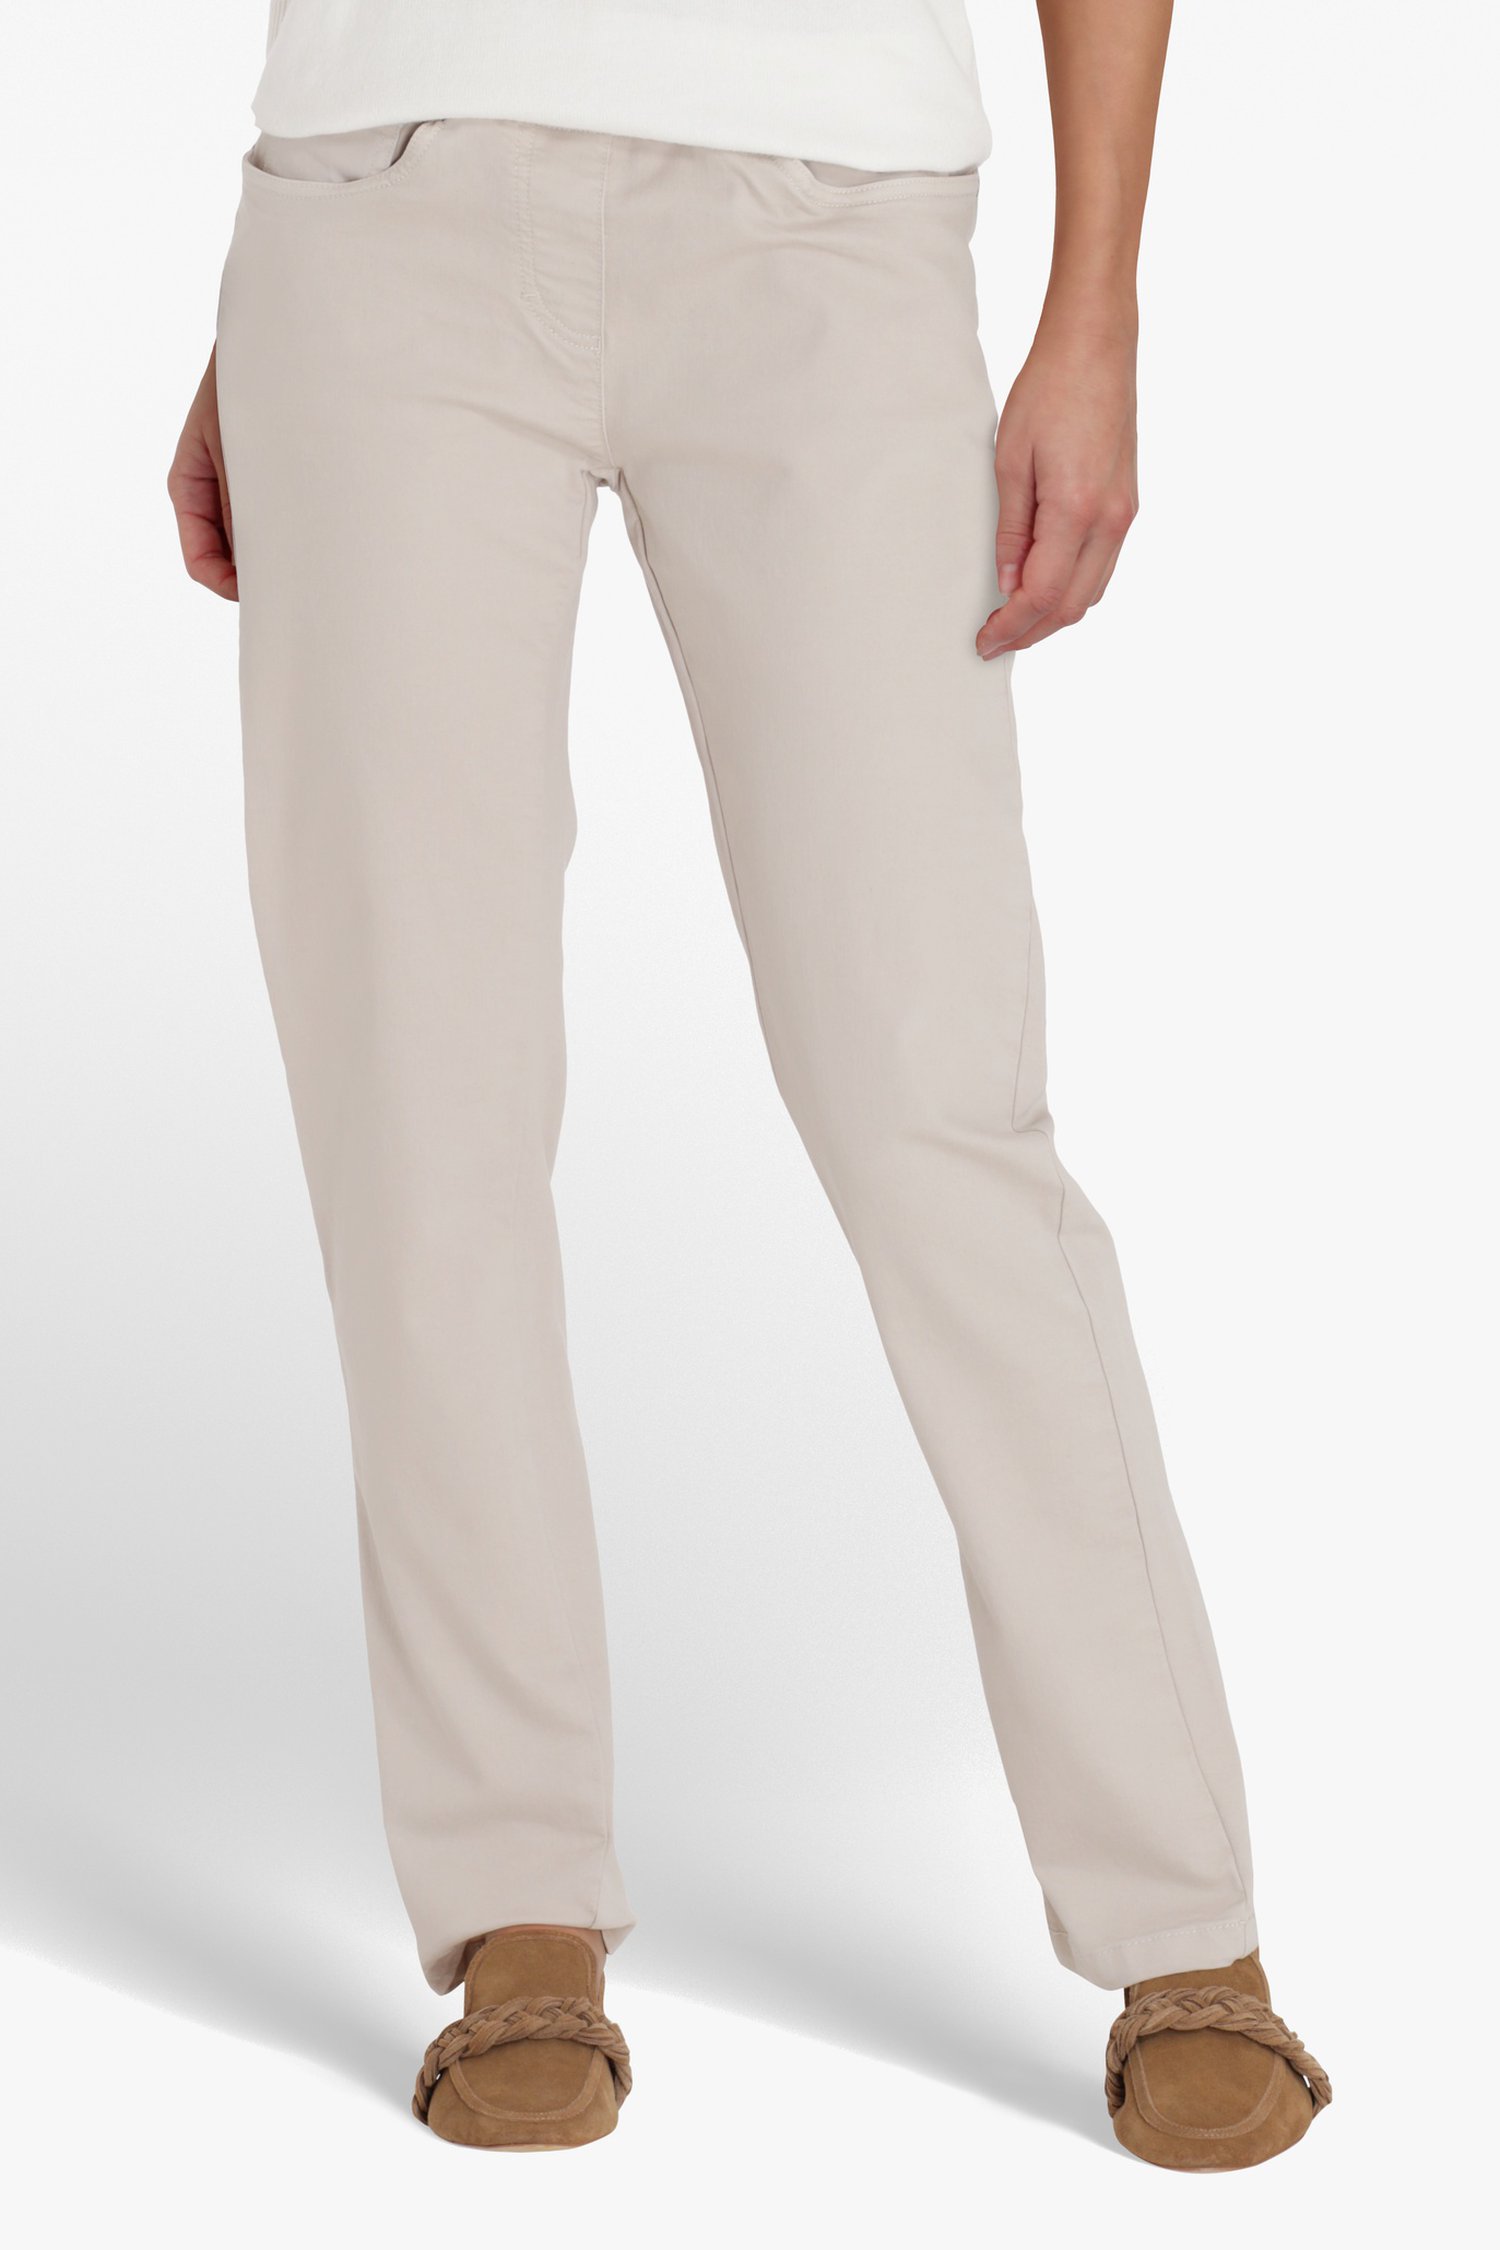 Beige broek - straight fit van Bicalla voor Dames